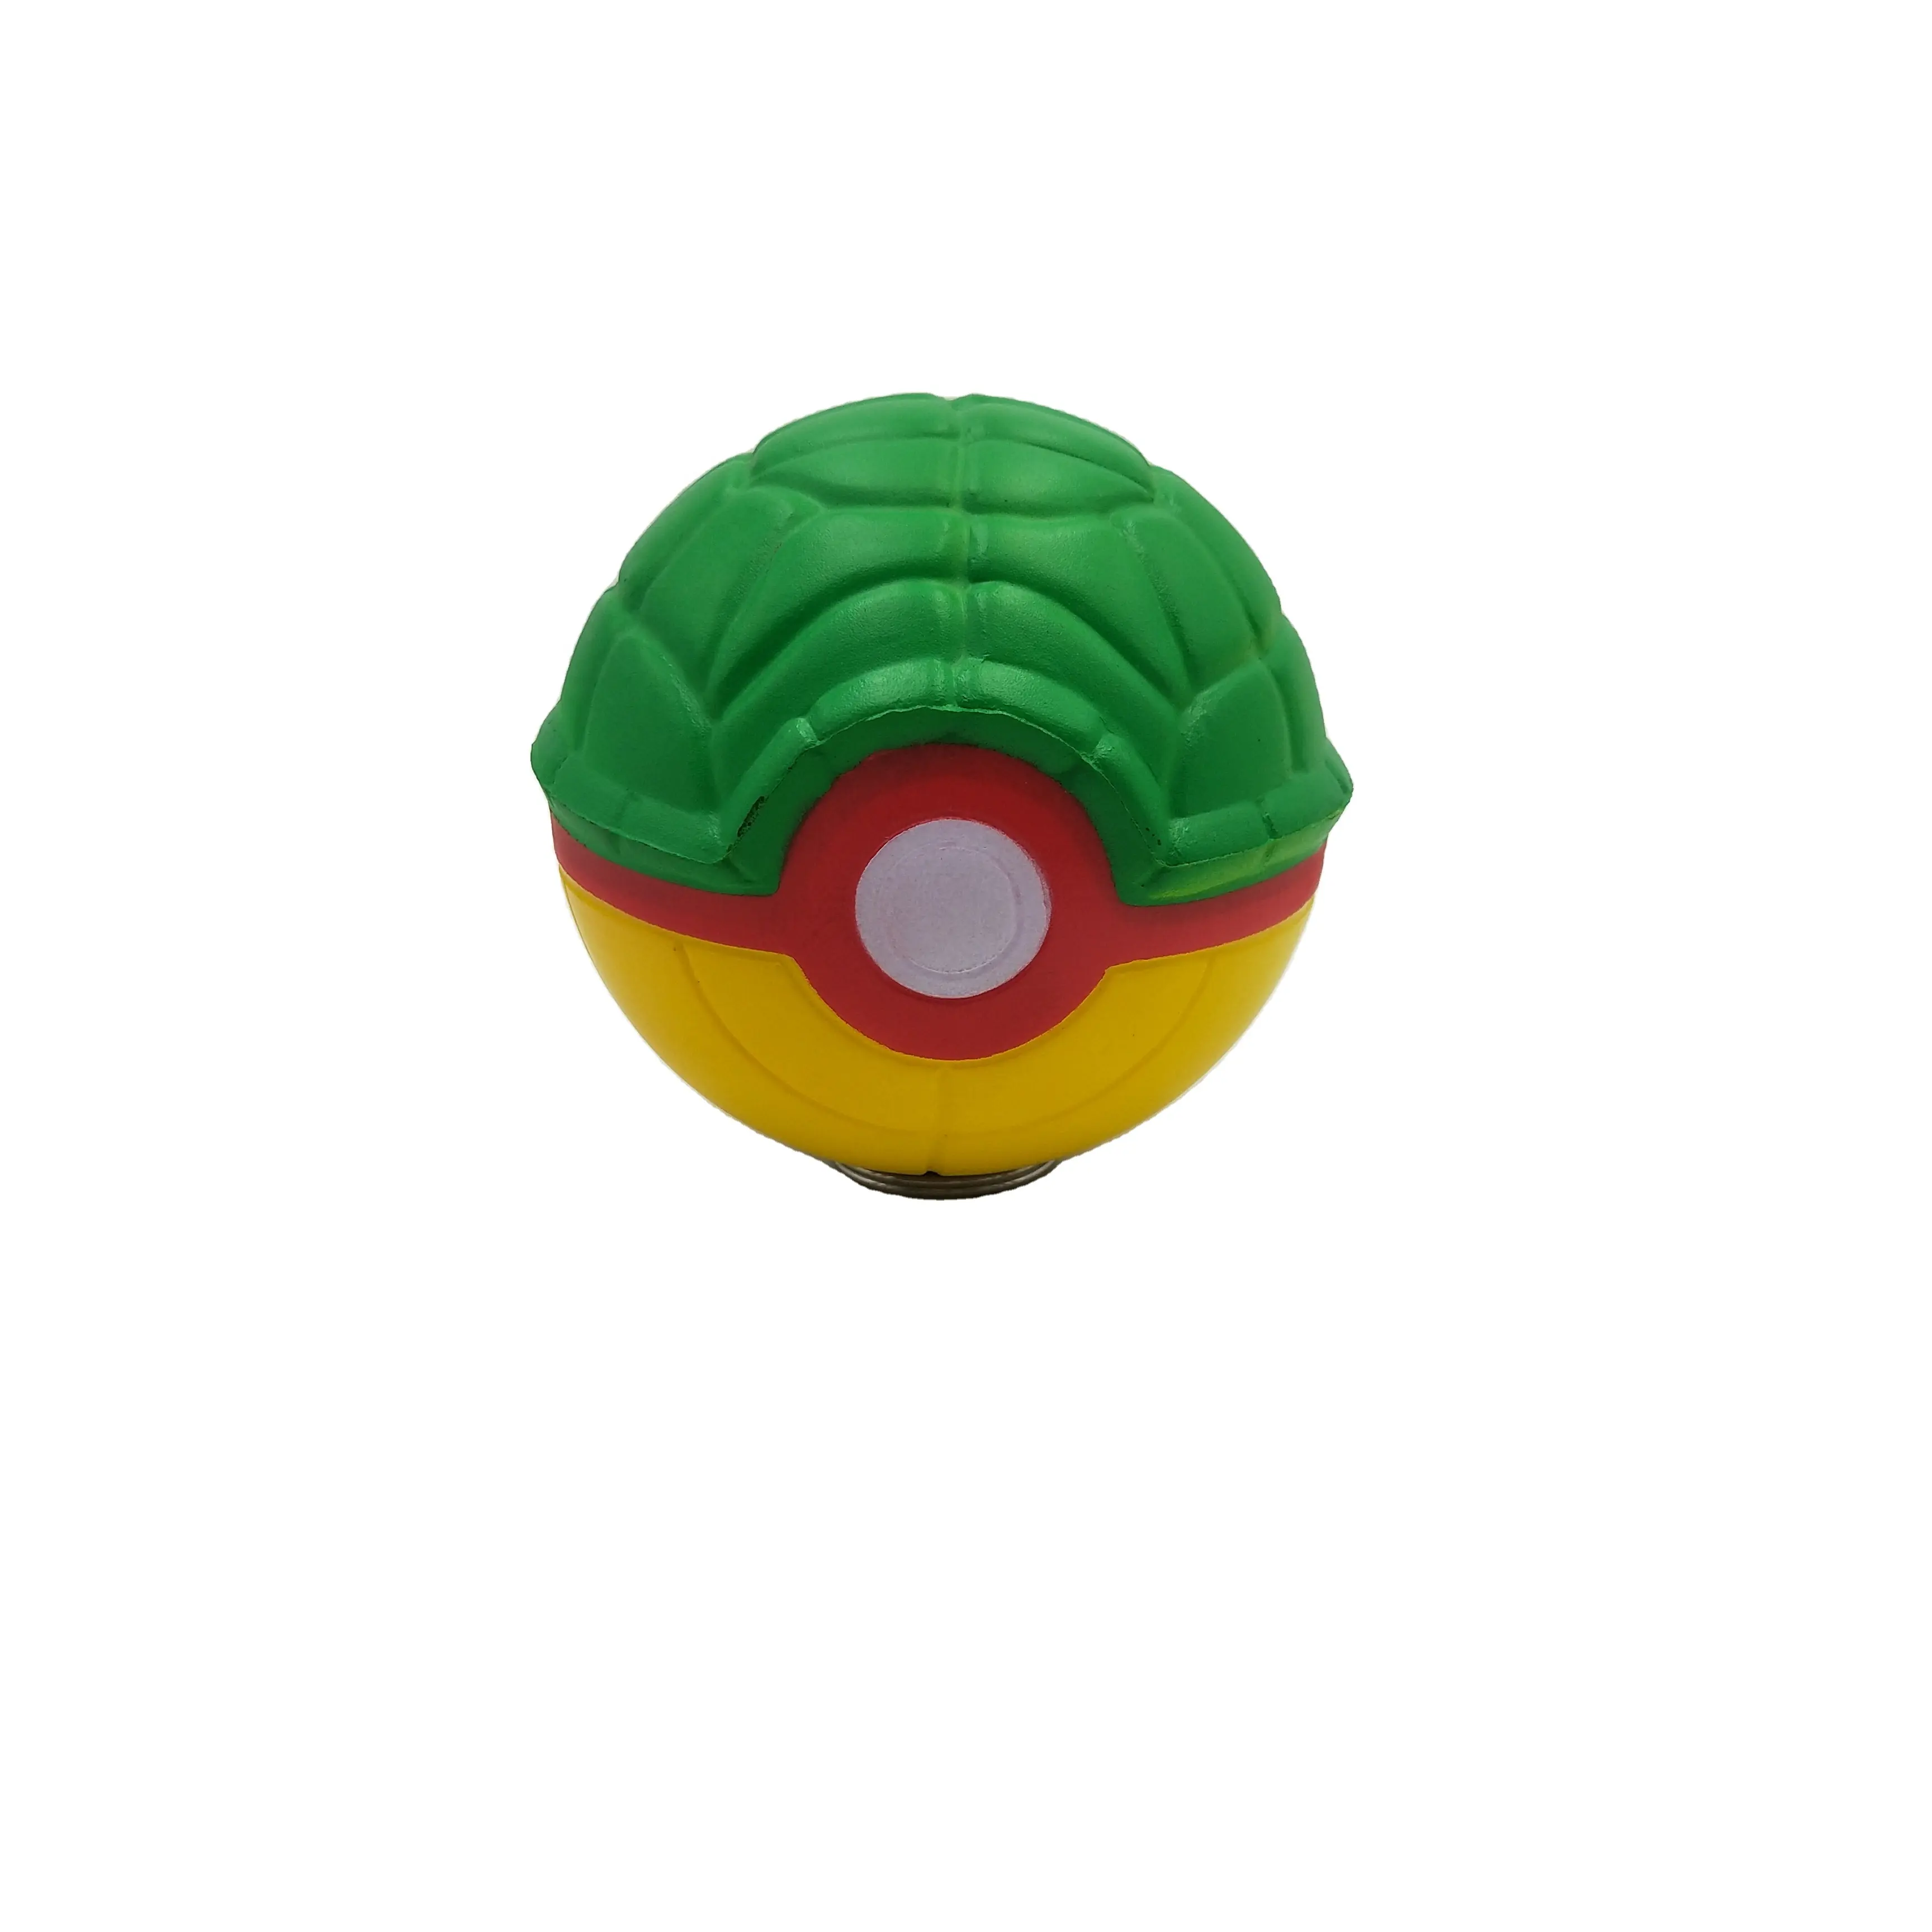 Üretici PU stres topu oyuncaklar PU köpük anti stres şekli stres giderici topu özel logo futbol yumuşacık oyuncak